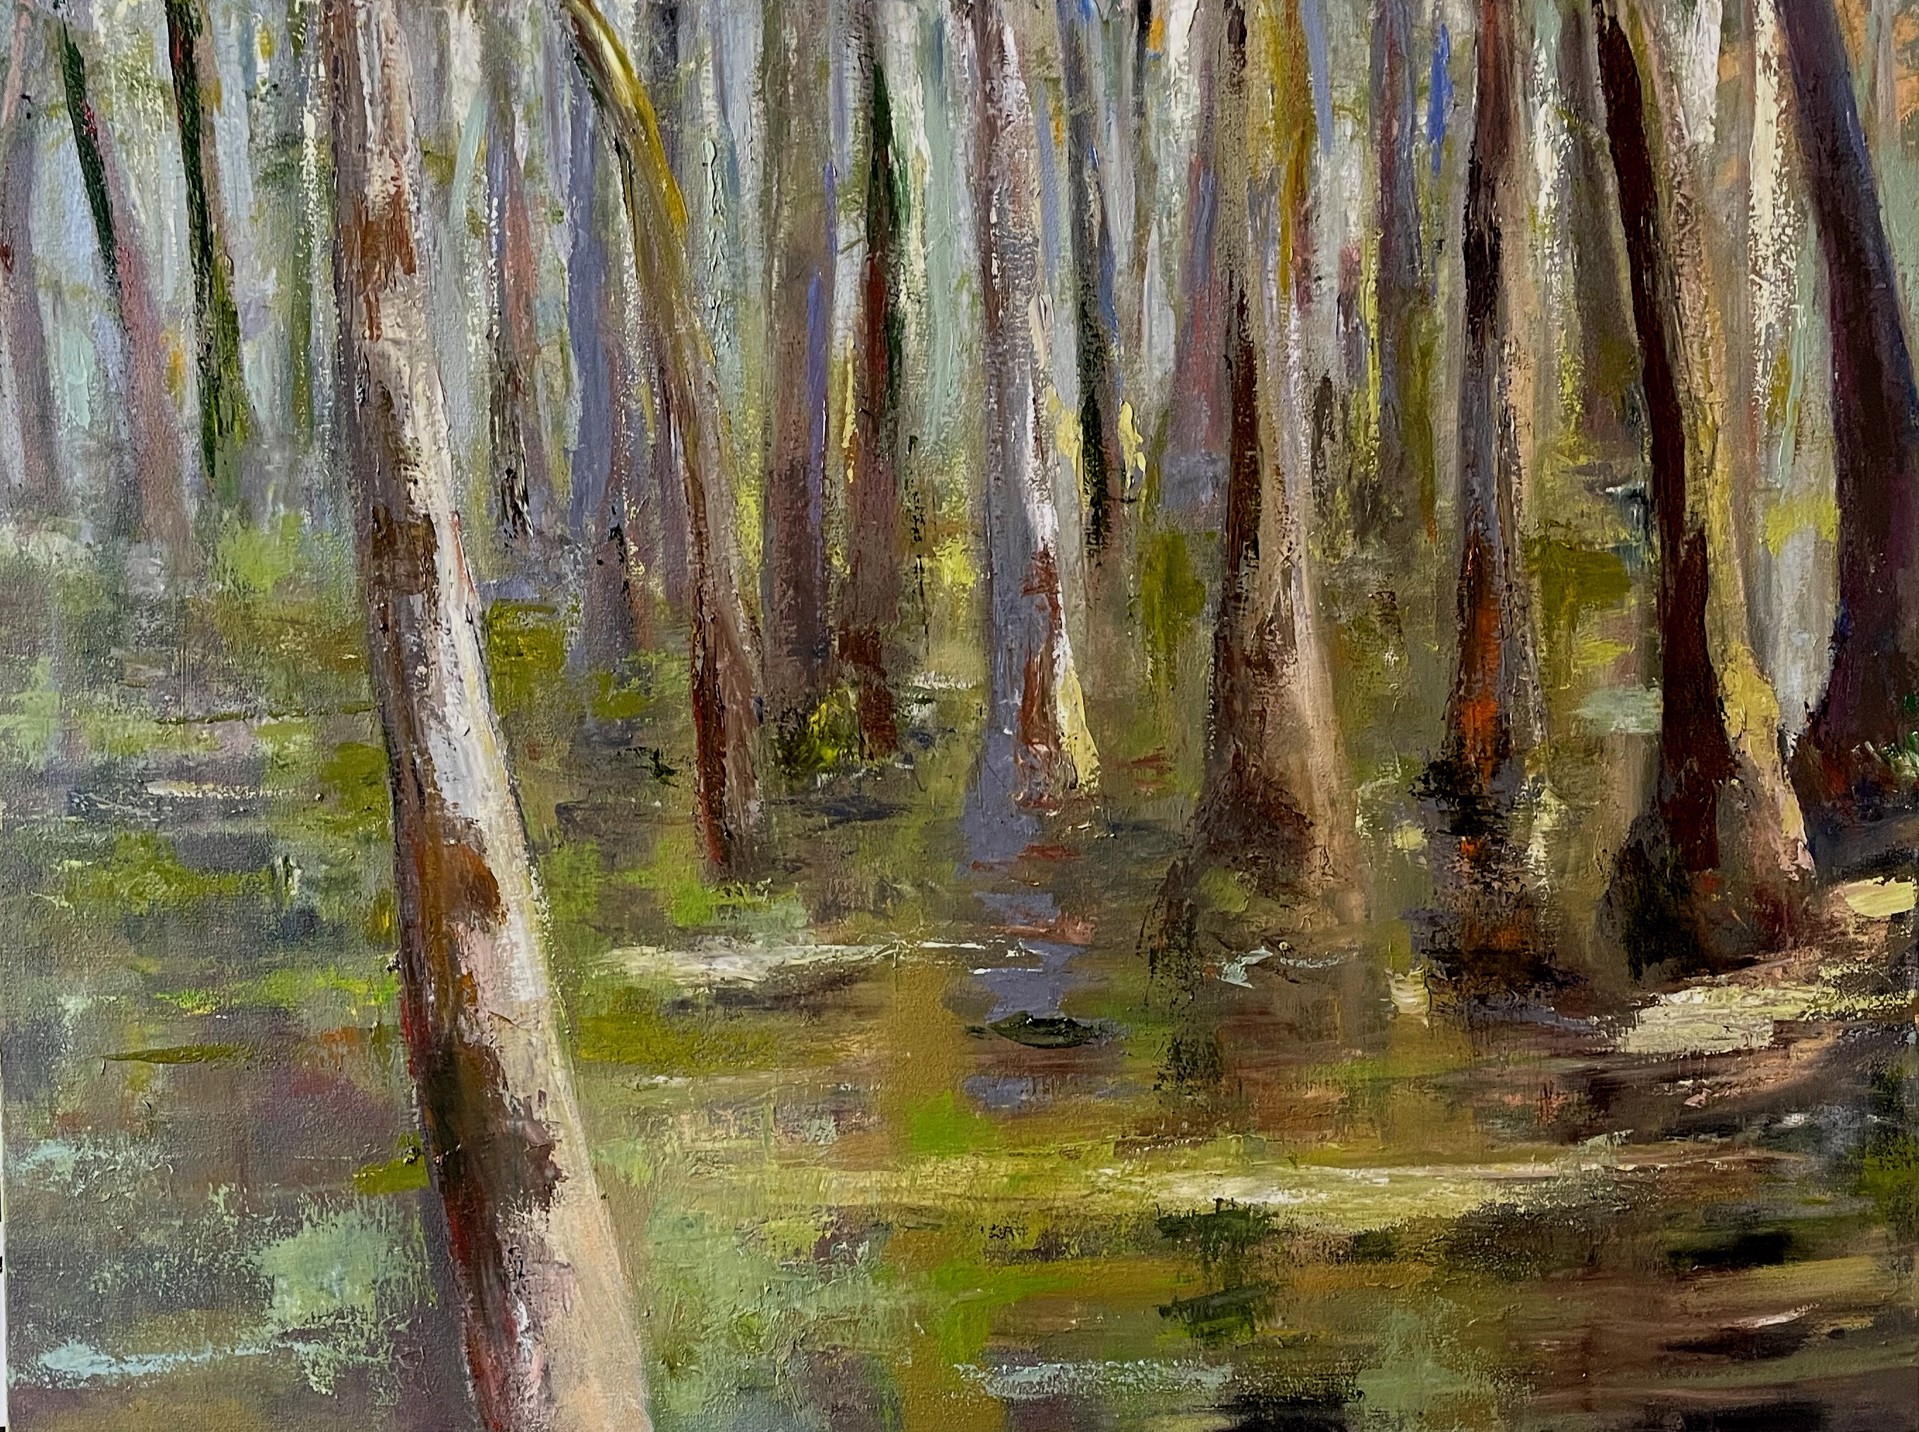 SC swamp by Maci Scheuer